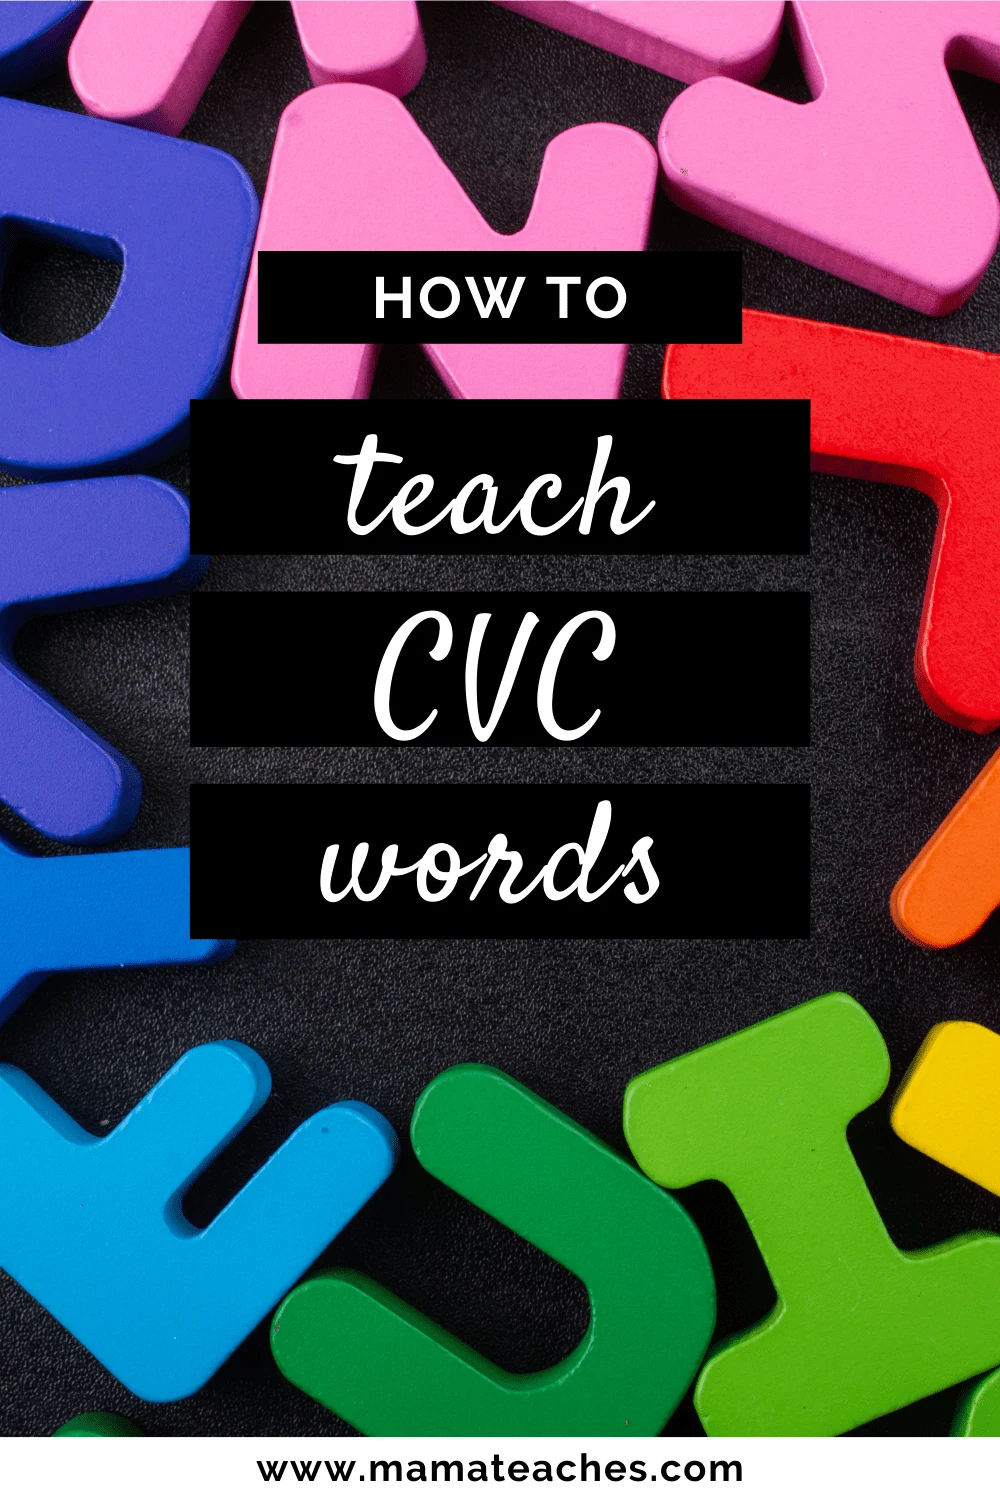 How to Teach CVC Words